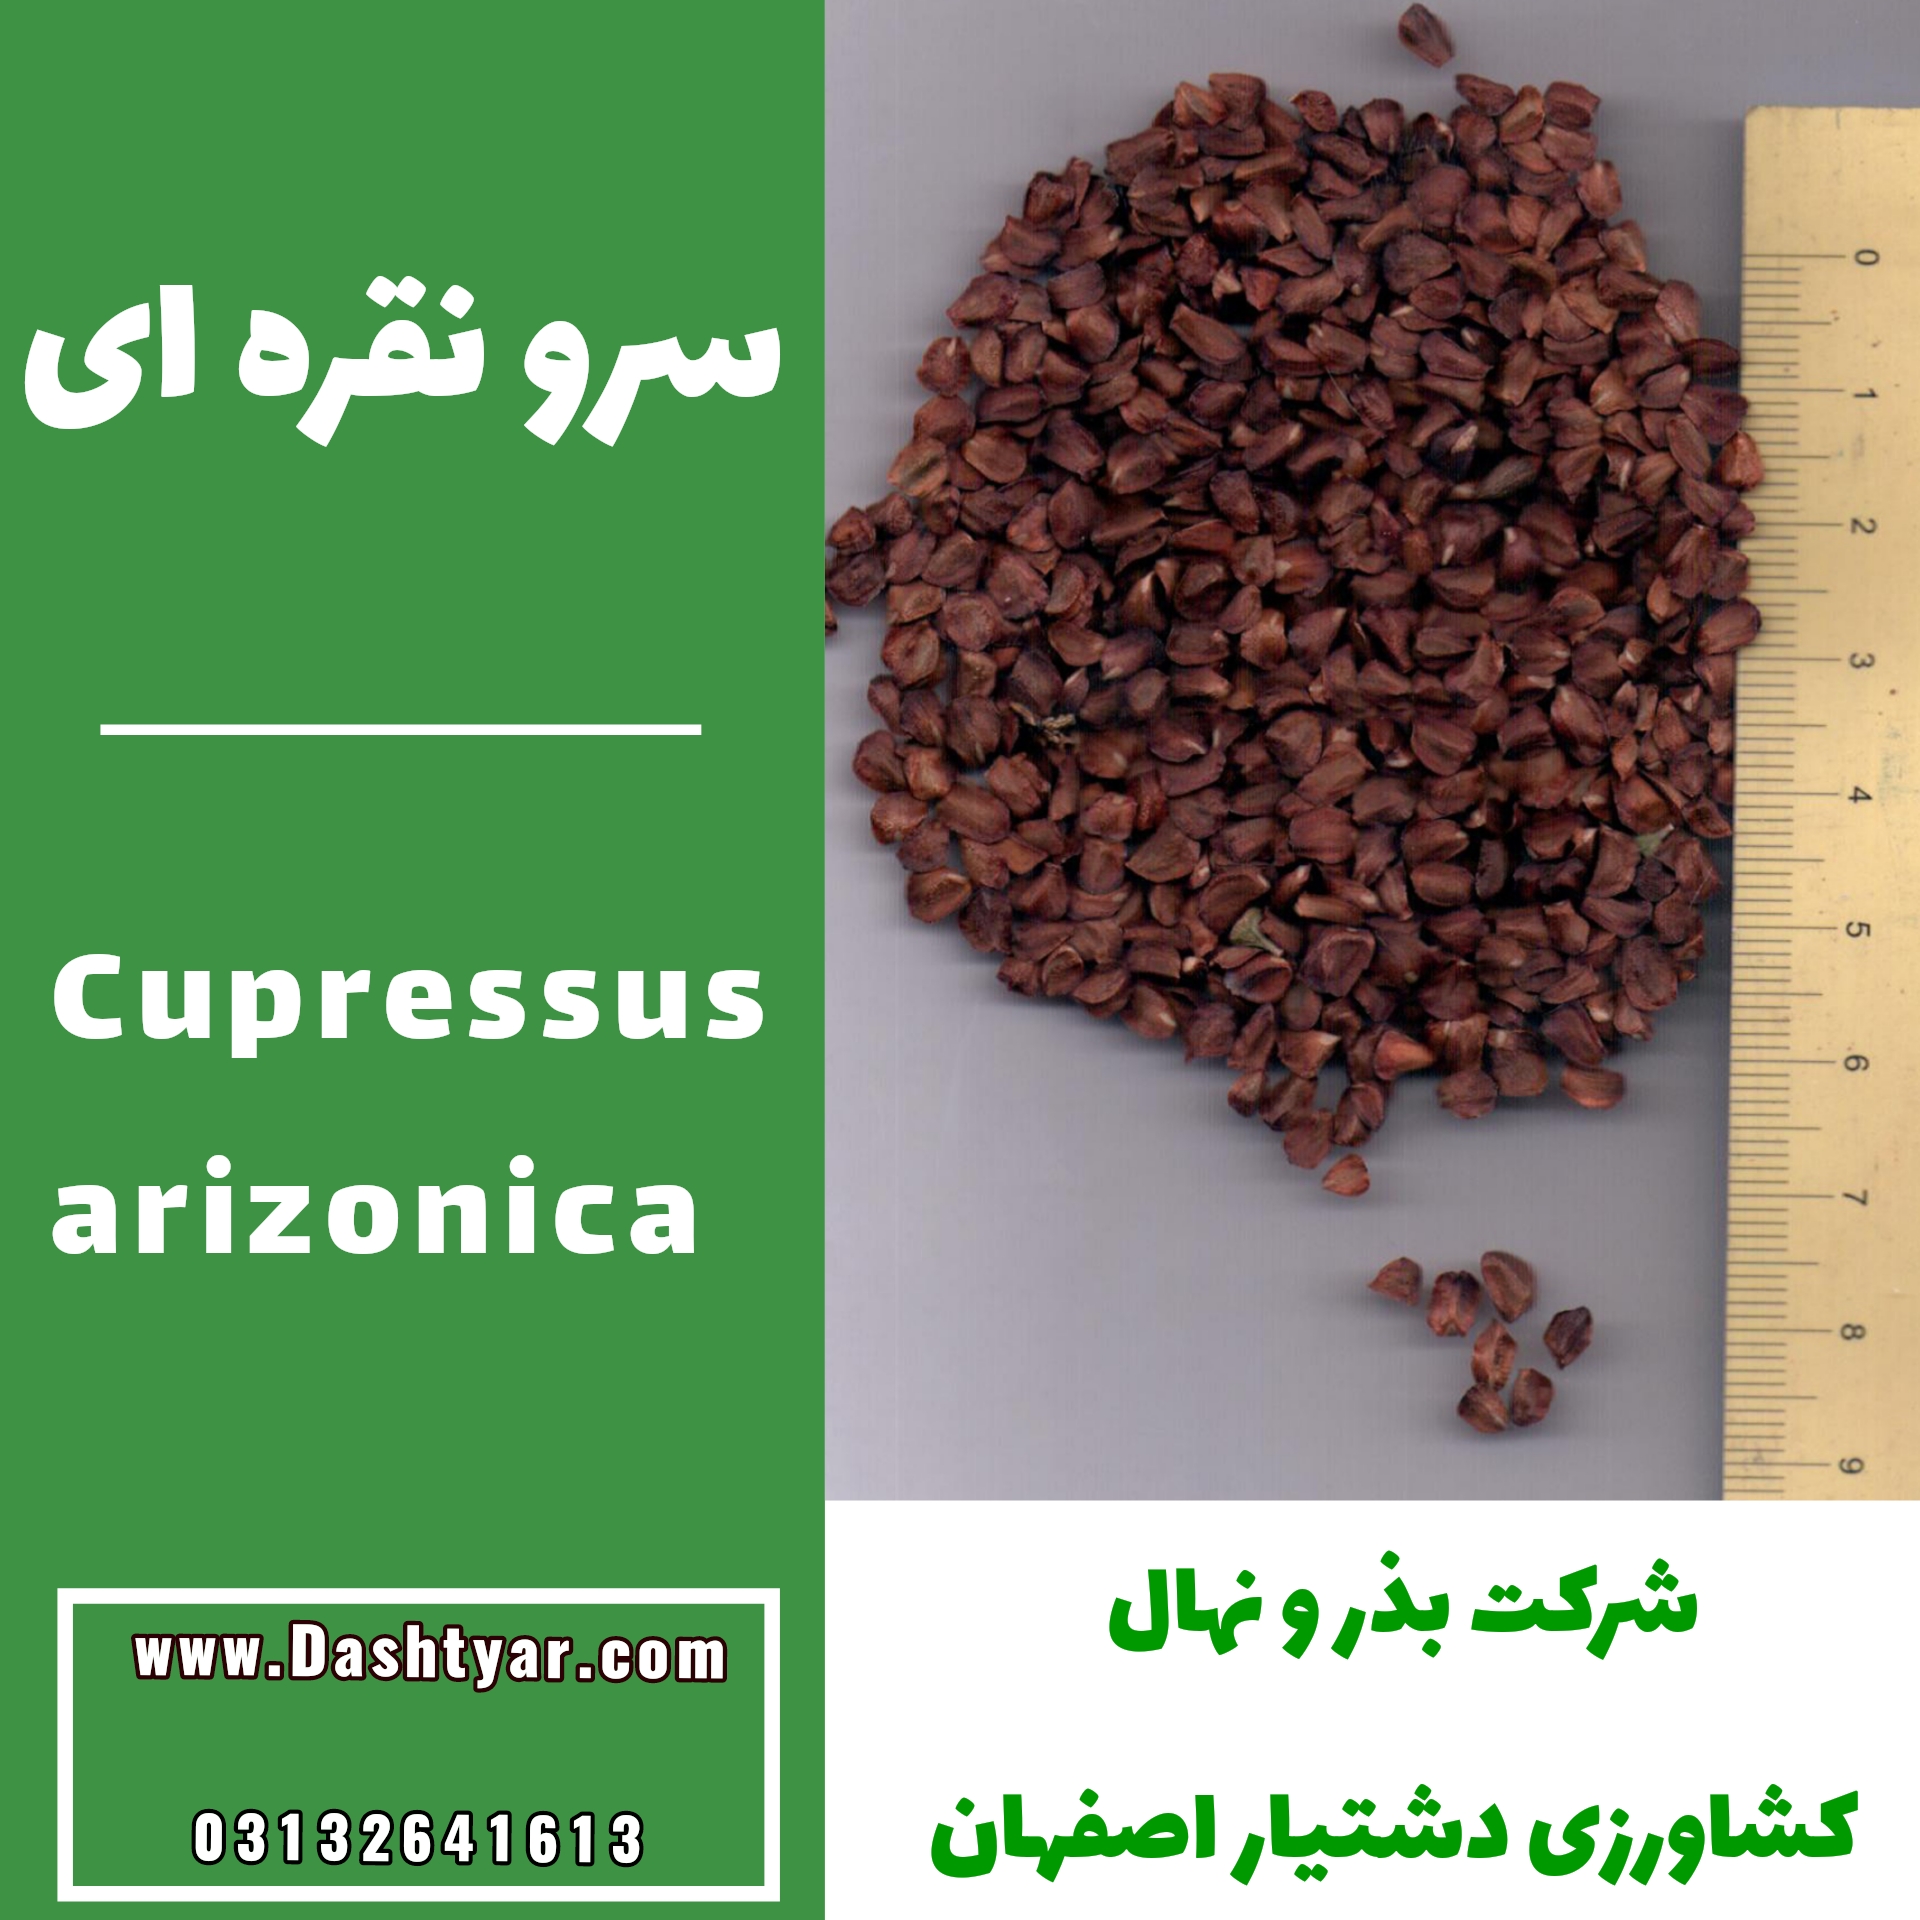 بذر سرو نقره ای cupressus arizonica